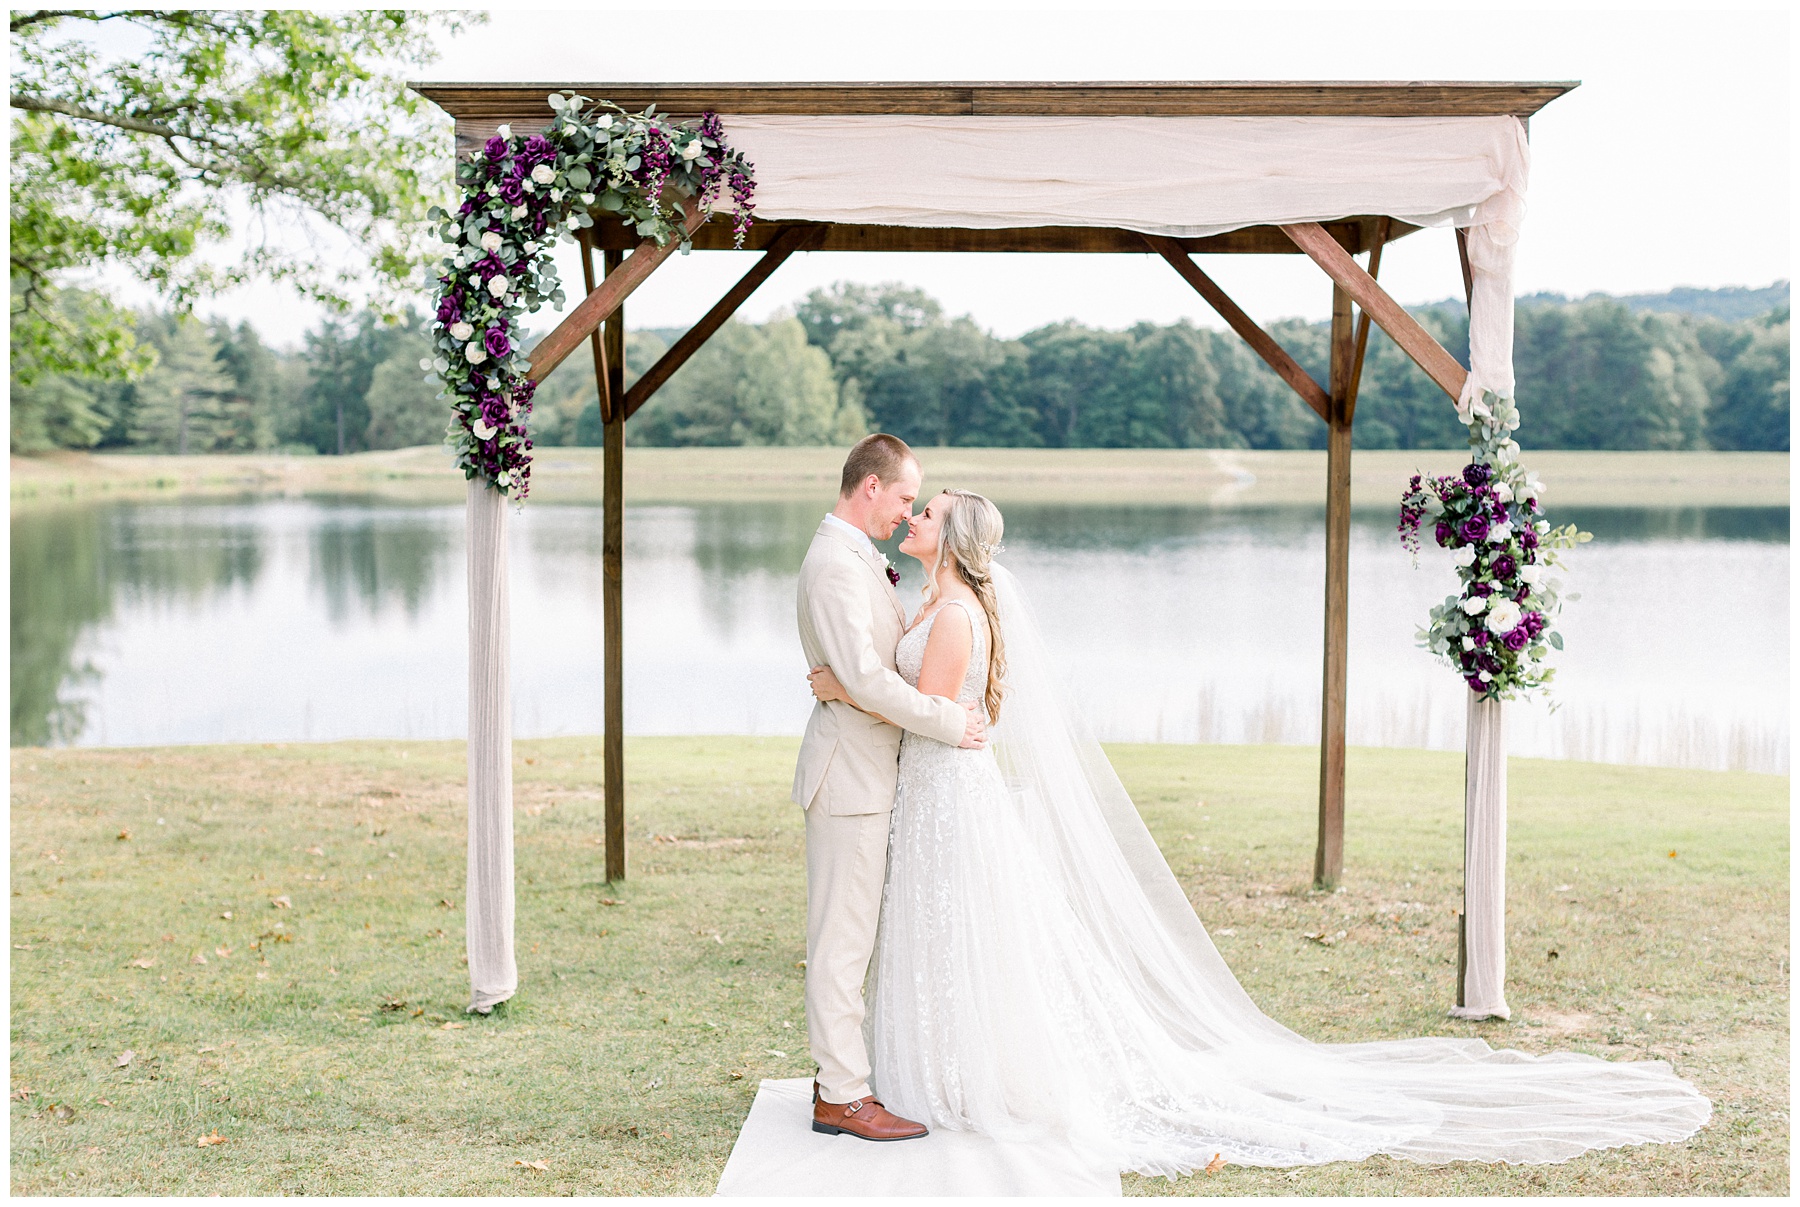 Stillwater Event Centre Wedding by Amanda Eloise Photography. North Carolina Wedding Photography. Columbus Ohio wedding